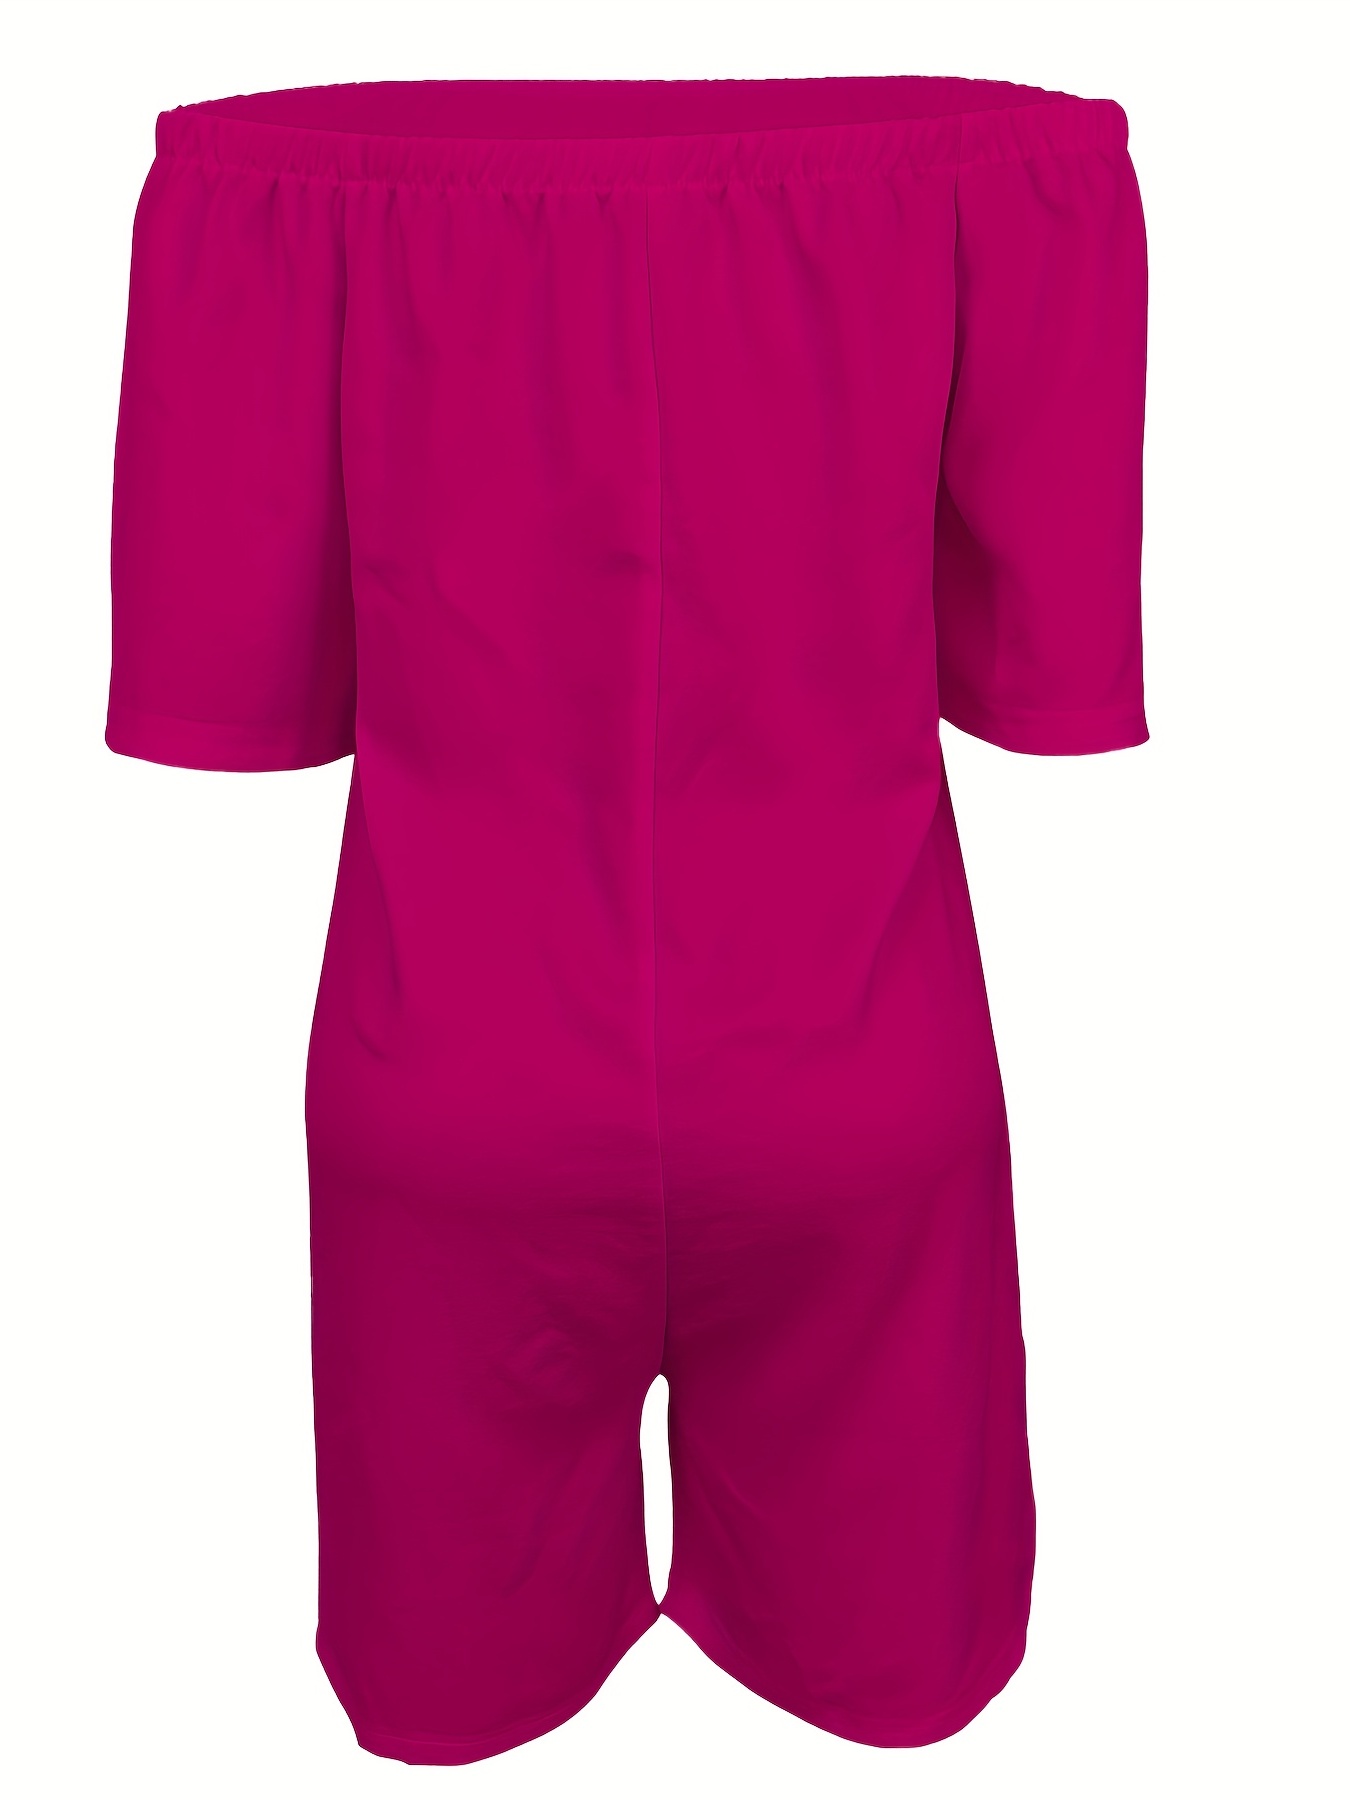 PSD Womens Boy Short Neon Pink Rose Size XL (30 to 31 Waist)